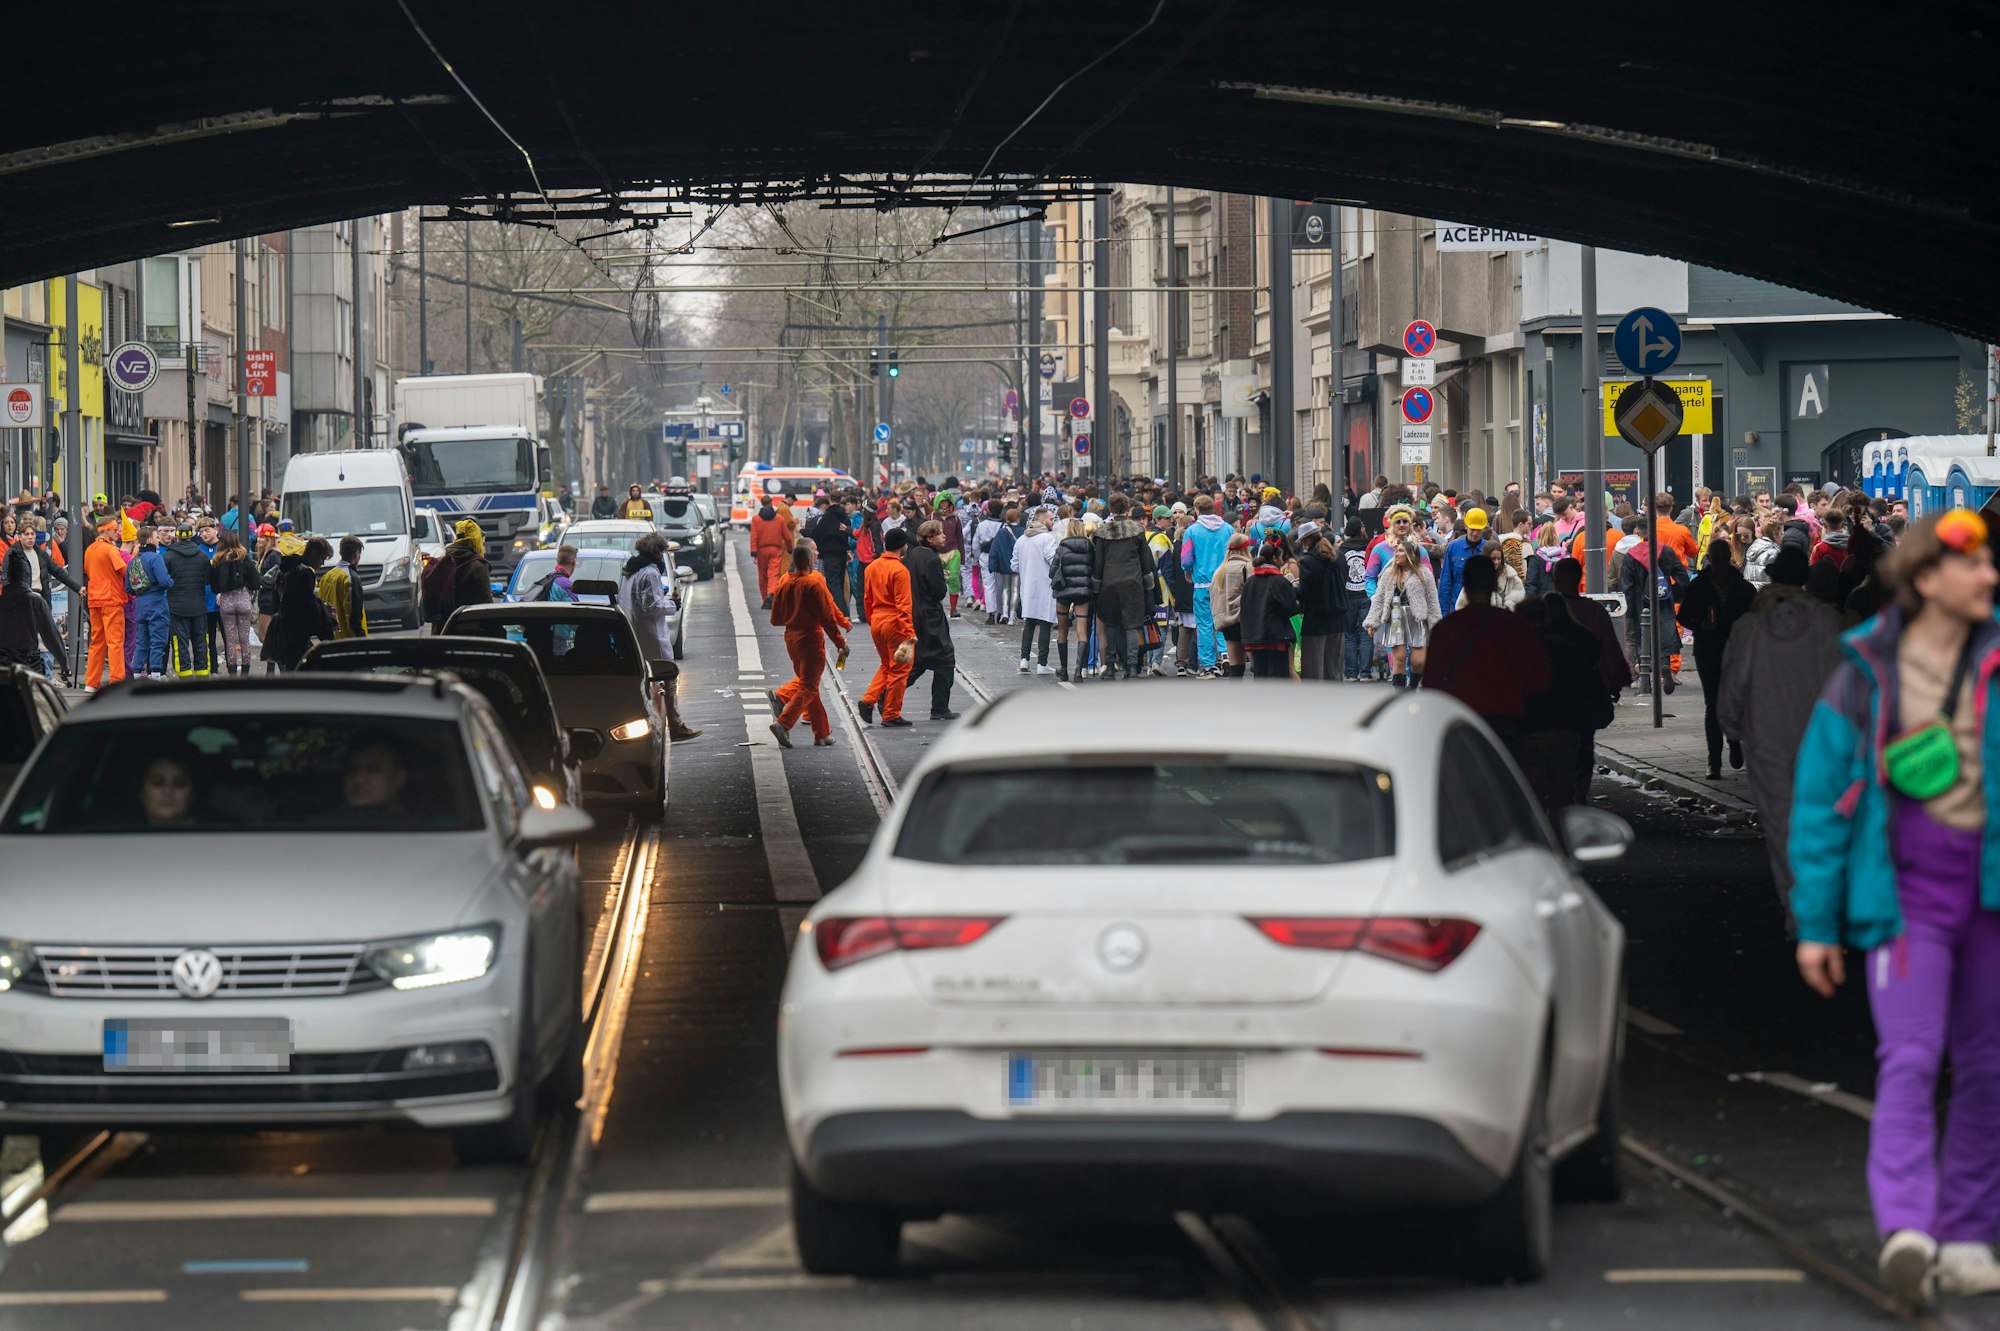 Hunderte Menschen laufen über die Luxemburger Straße und sind teilweise auch auf der Fahrbahn unterwegs. Autos bewegen sich langsam durch die Menschenmenge.